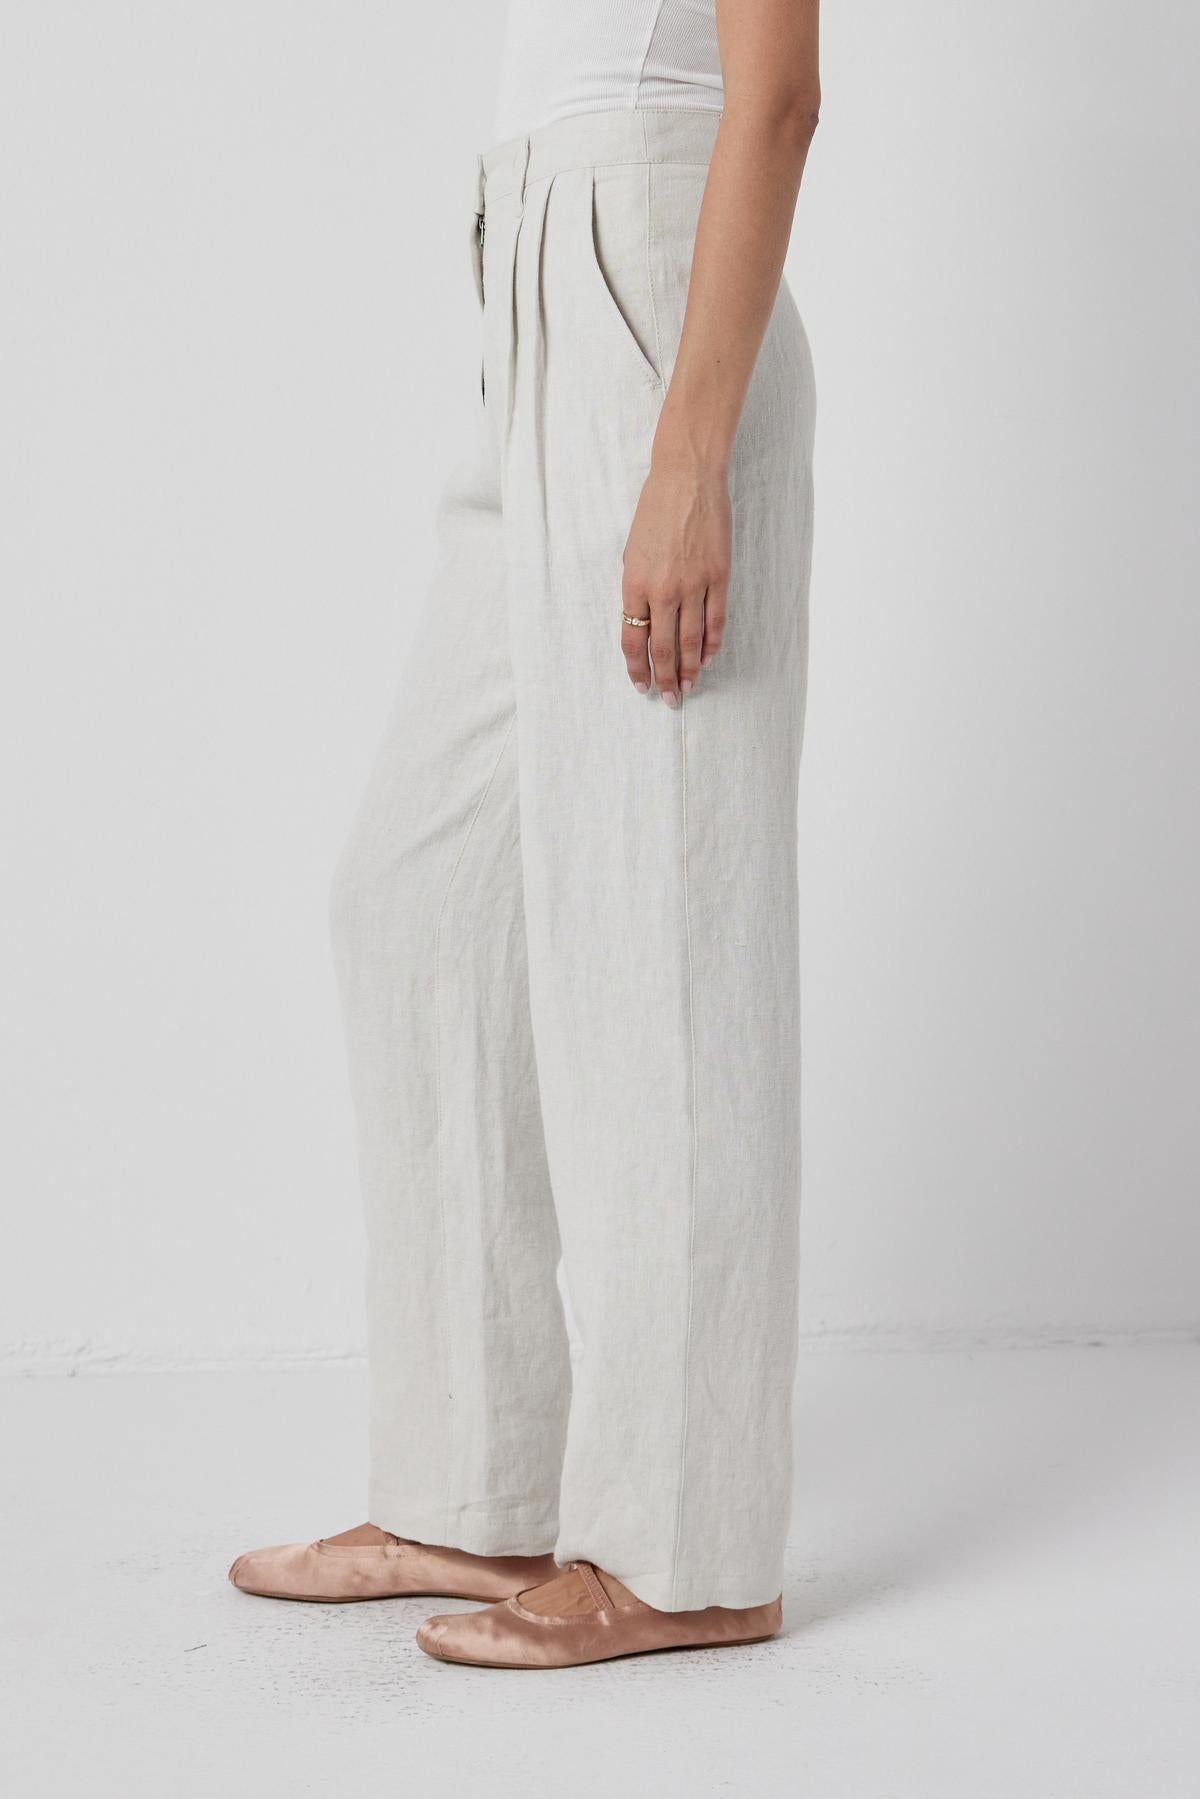 The model is wearing Velvet by Jenny Graham's white linen Pomona pants.-36168716681409